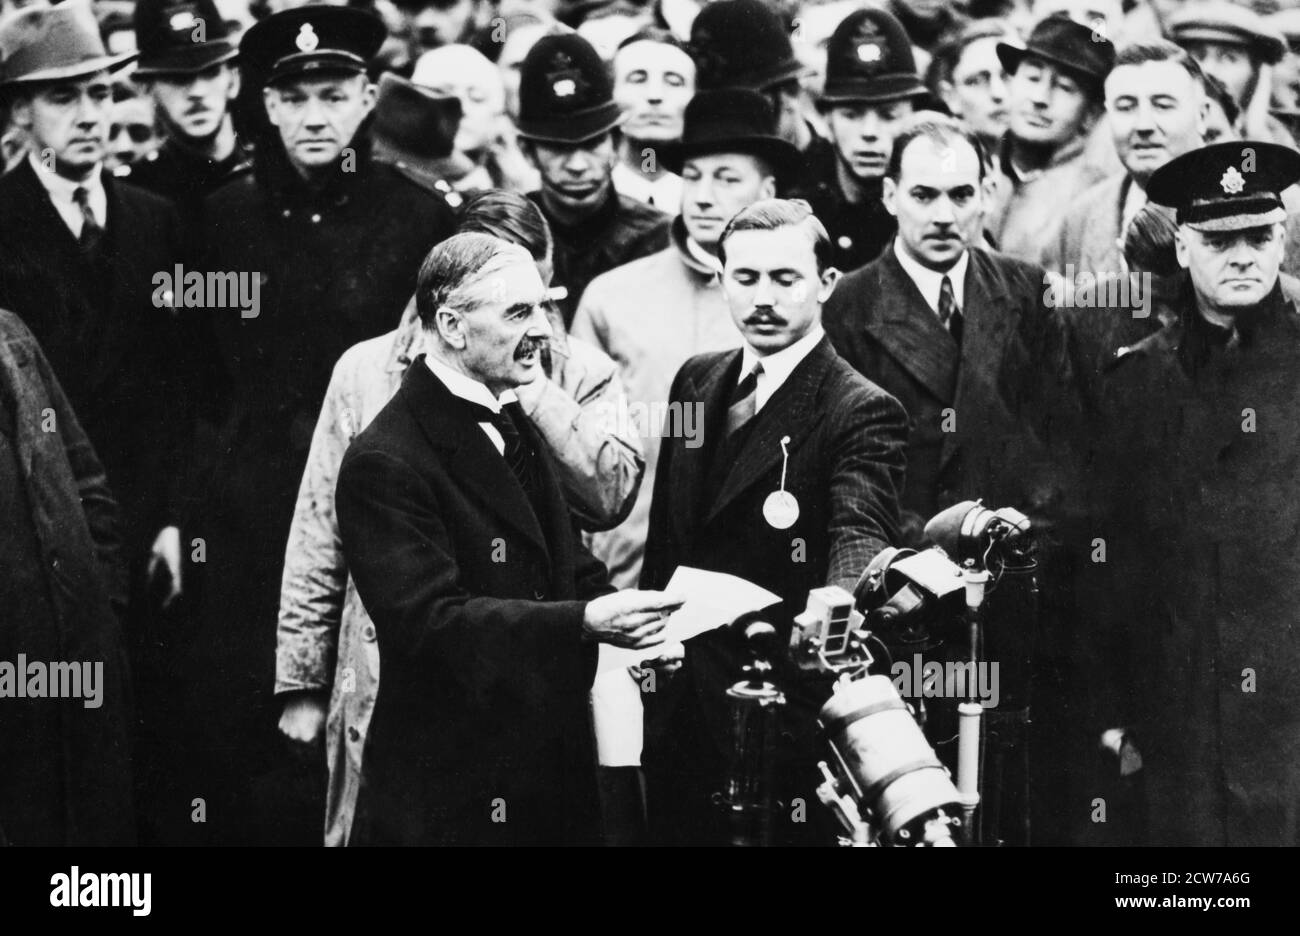 AÉRODROME DE HESTON, LONDRES - SEPTEMBRE 30 : Neville Chamberlain, Premier ministre britannique, arrive à l'aérodrome de Heston, Londres, après une rencontre avec Adolf Hitler, le 30 septembre 1938. Il agita un morceau de papier, déclarant que nous avons « la paix pour notre temps », cherchant à éviter la guerre en Europe, les dirigeants de Grande-Bretagne, de France et d'Italie signèrent le Pacte de Munich, acceptant les demandes d'Hitler et cédant la Tchécoslovaquie à l'Allemagne. Banque D'Images